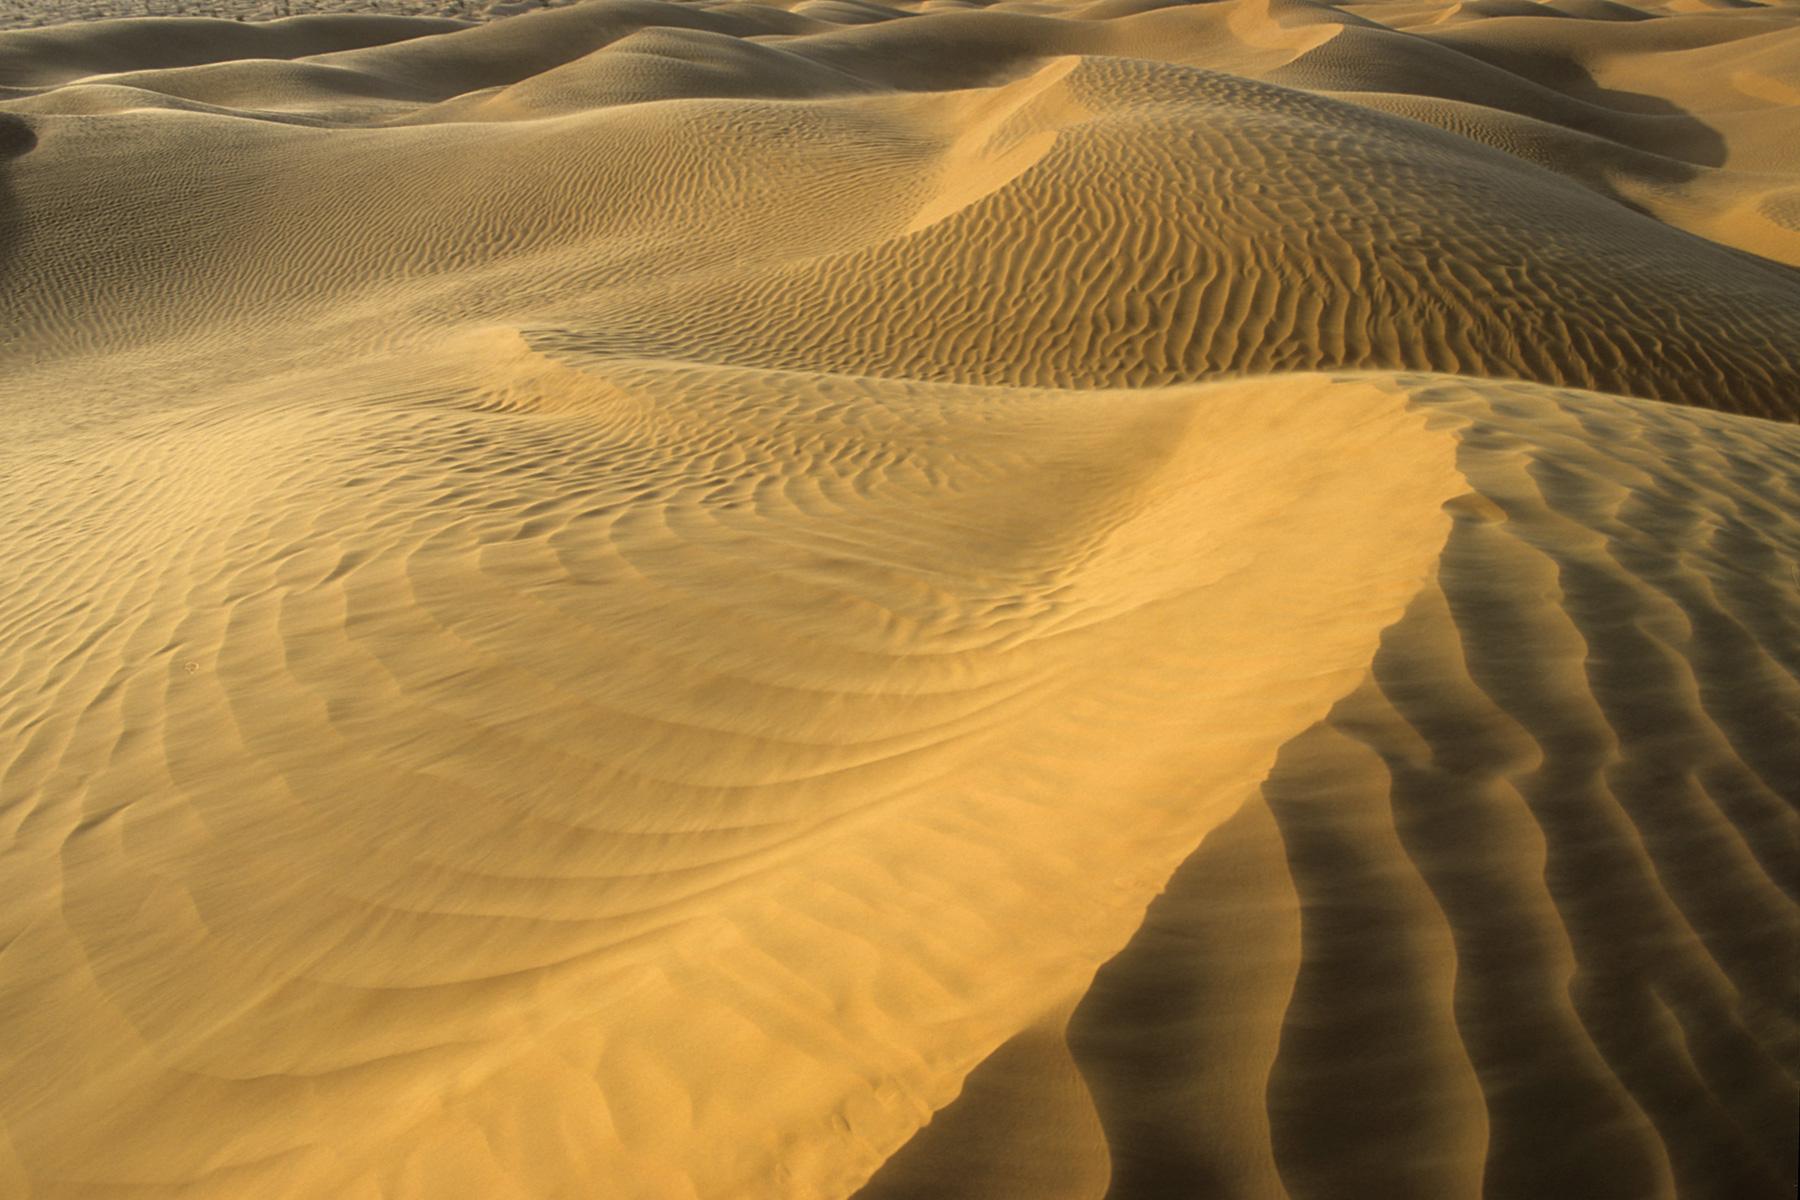 Sud Tunisien. Près de Ksar Ghilane. Coucher de soleil sur les dunes. Crête de sable ridé par le vent en premier plan.